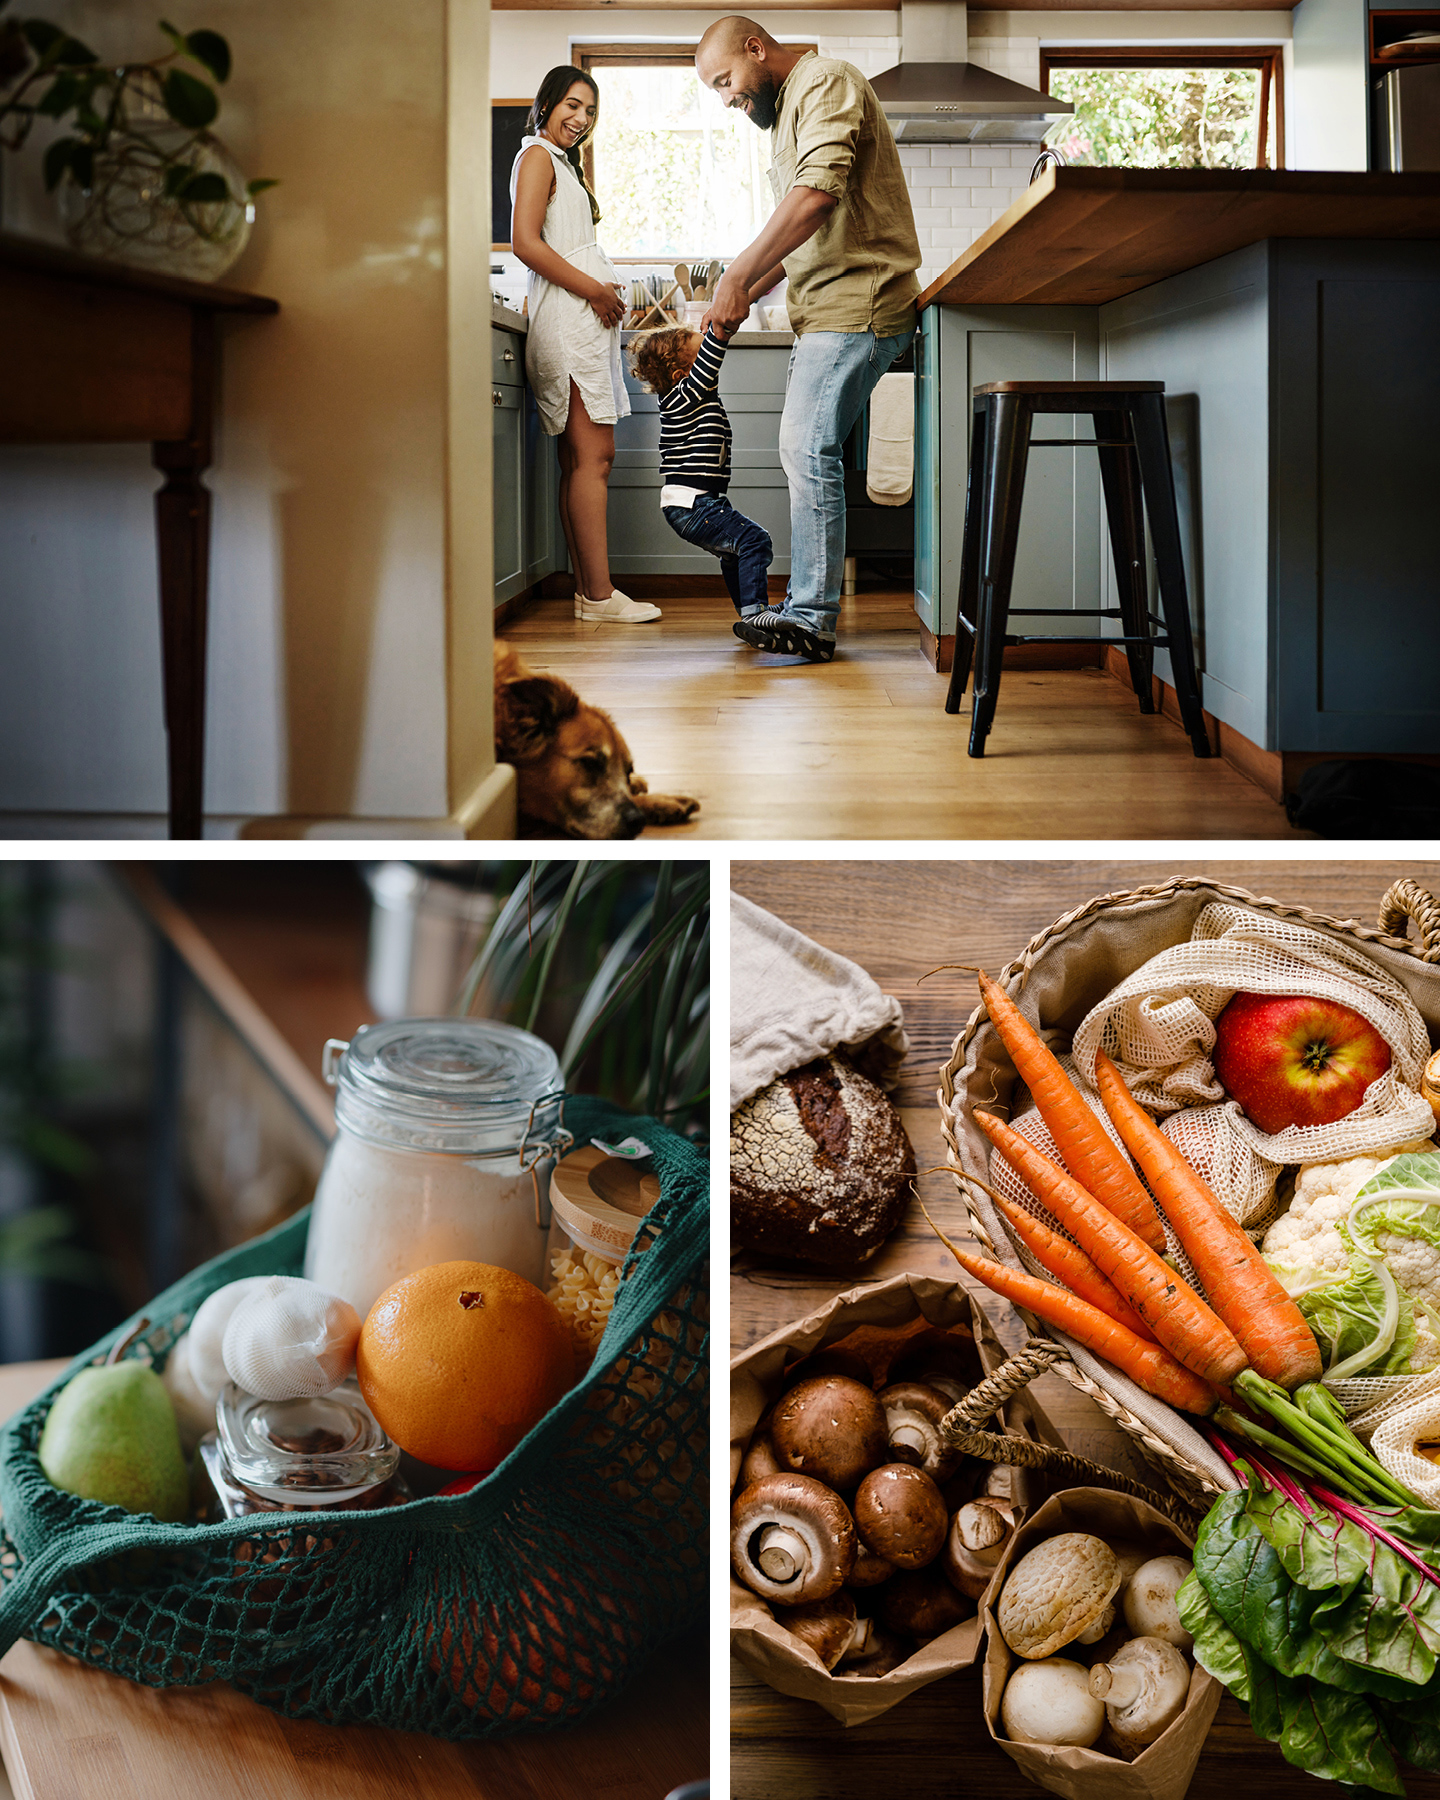 Nachhaltigkeit als Familie in der Küche: Familie hat Spaß in der Küche, Obst und Gemüse liegen ohne Plastik auf einem Holztisch.